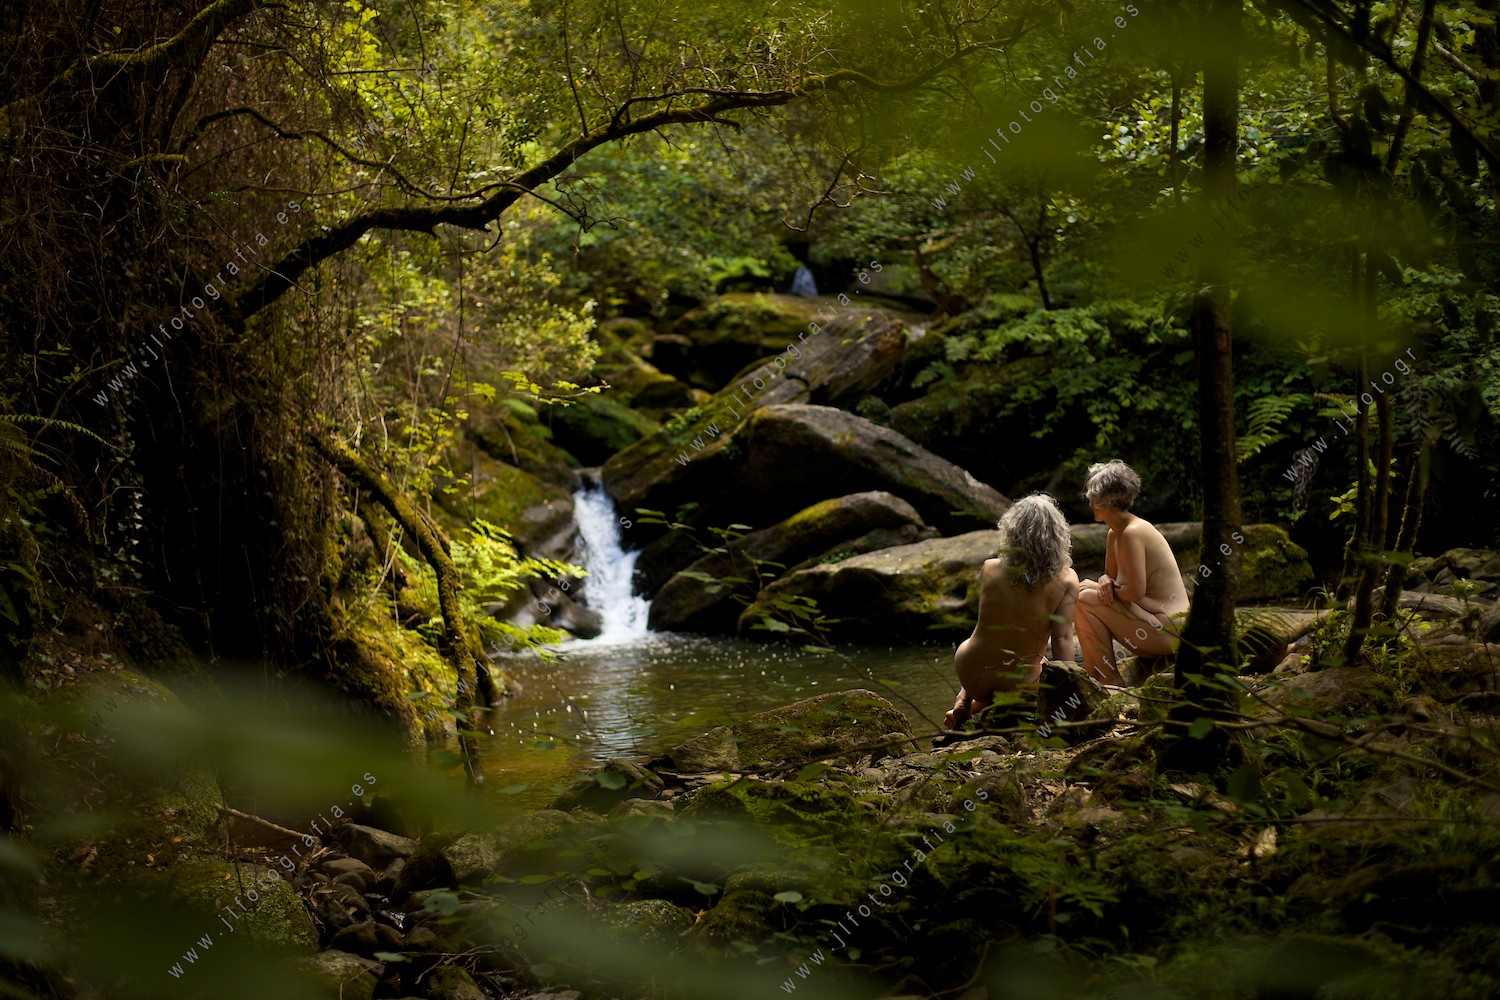 Dos mujeres desnudas sentadas en la orilla del río junto a una cascada.